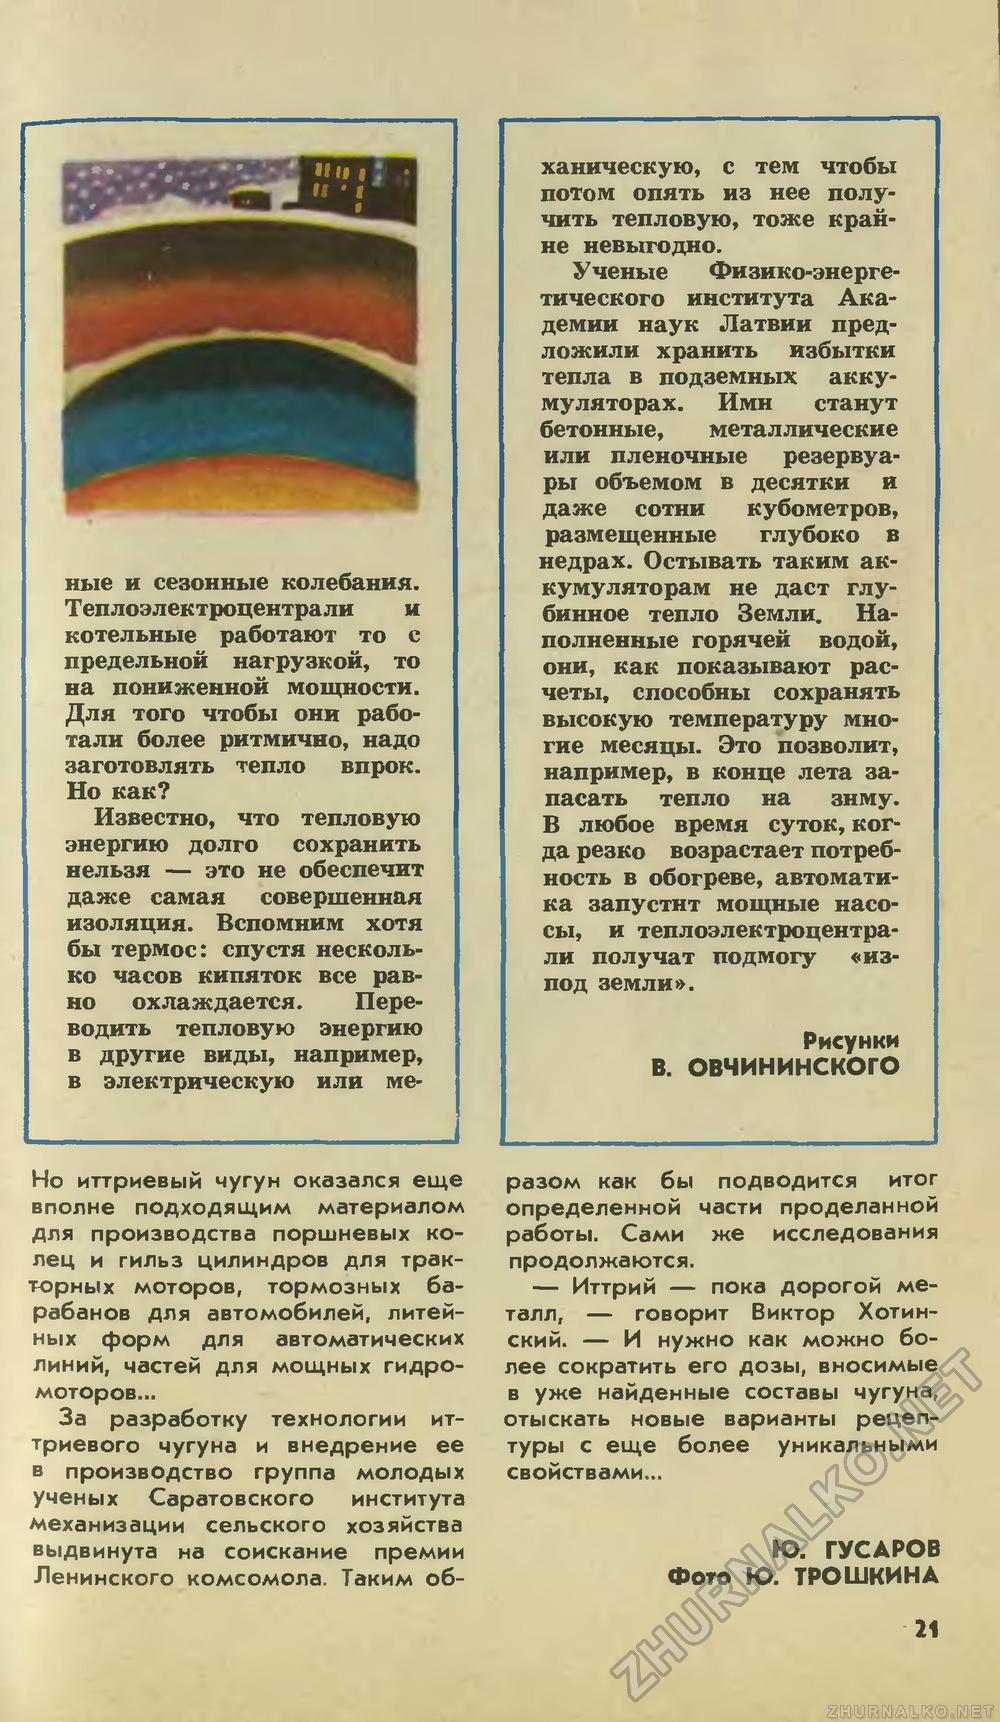   1978-08,  23